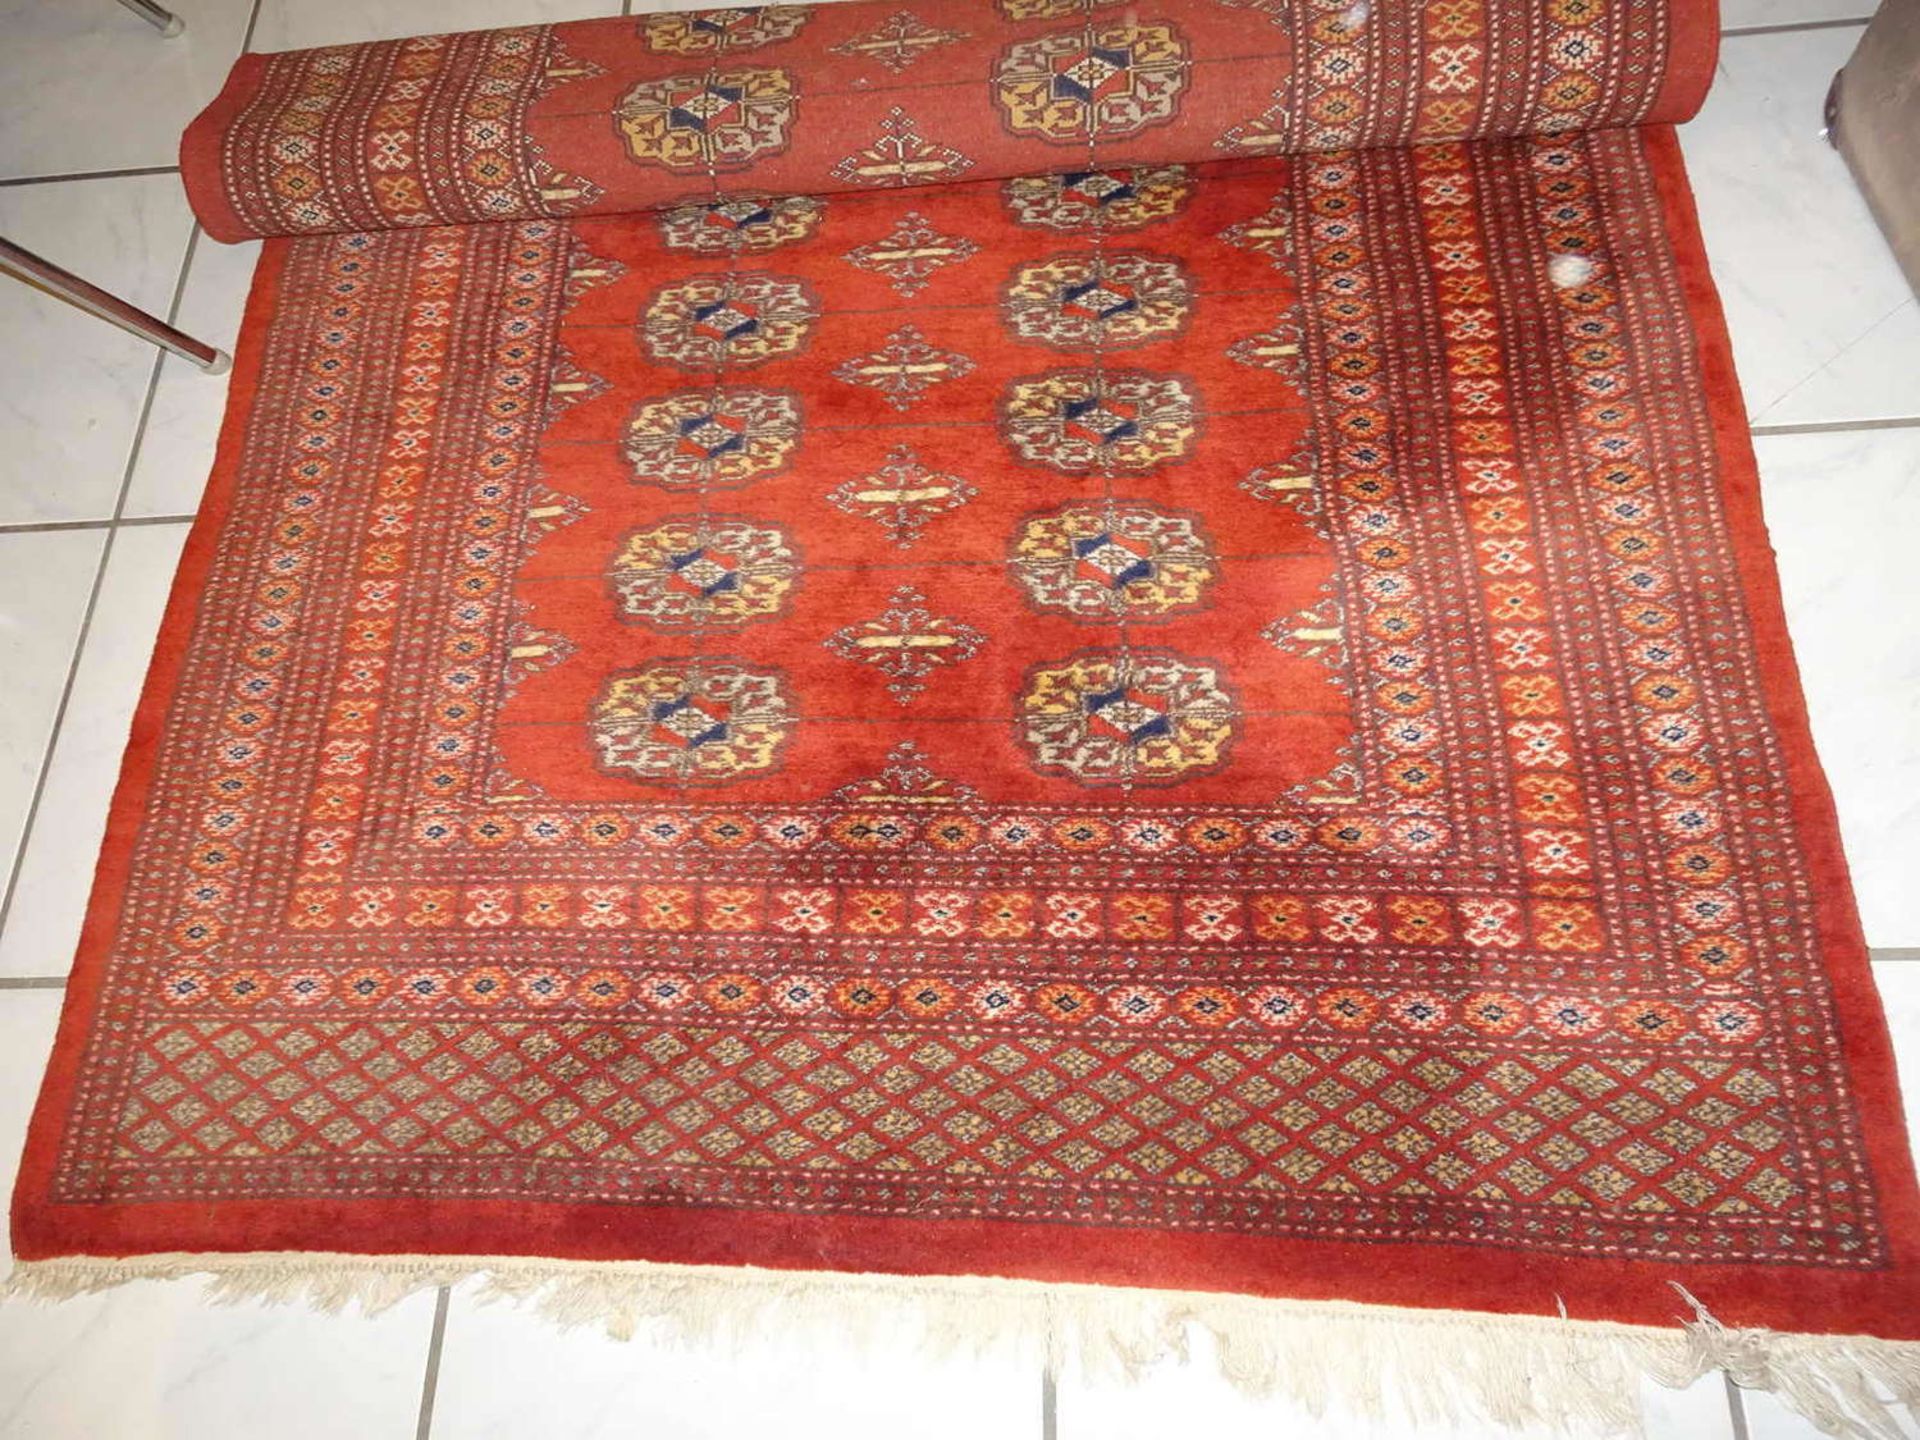 wertvoller Teppich aus Iran, Länge ca. 2 m, Breite ca. 1,20 m. Bitte besichtigen!valuable carpet